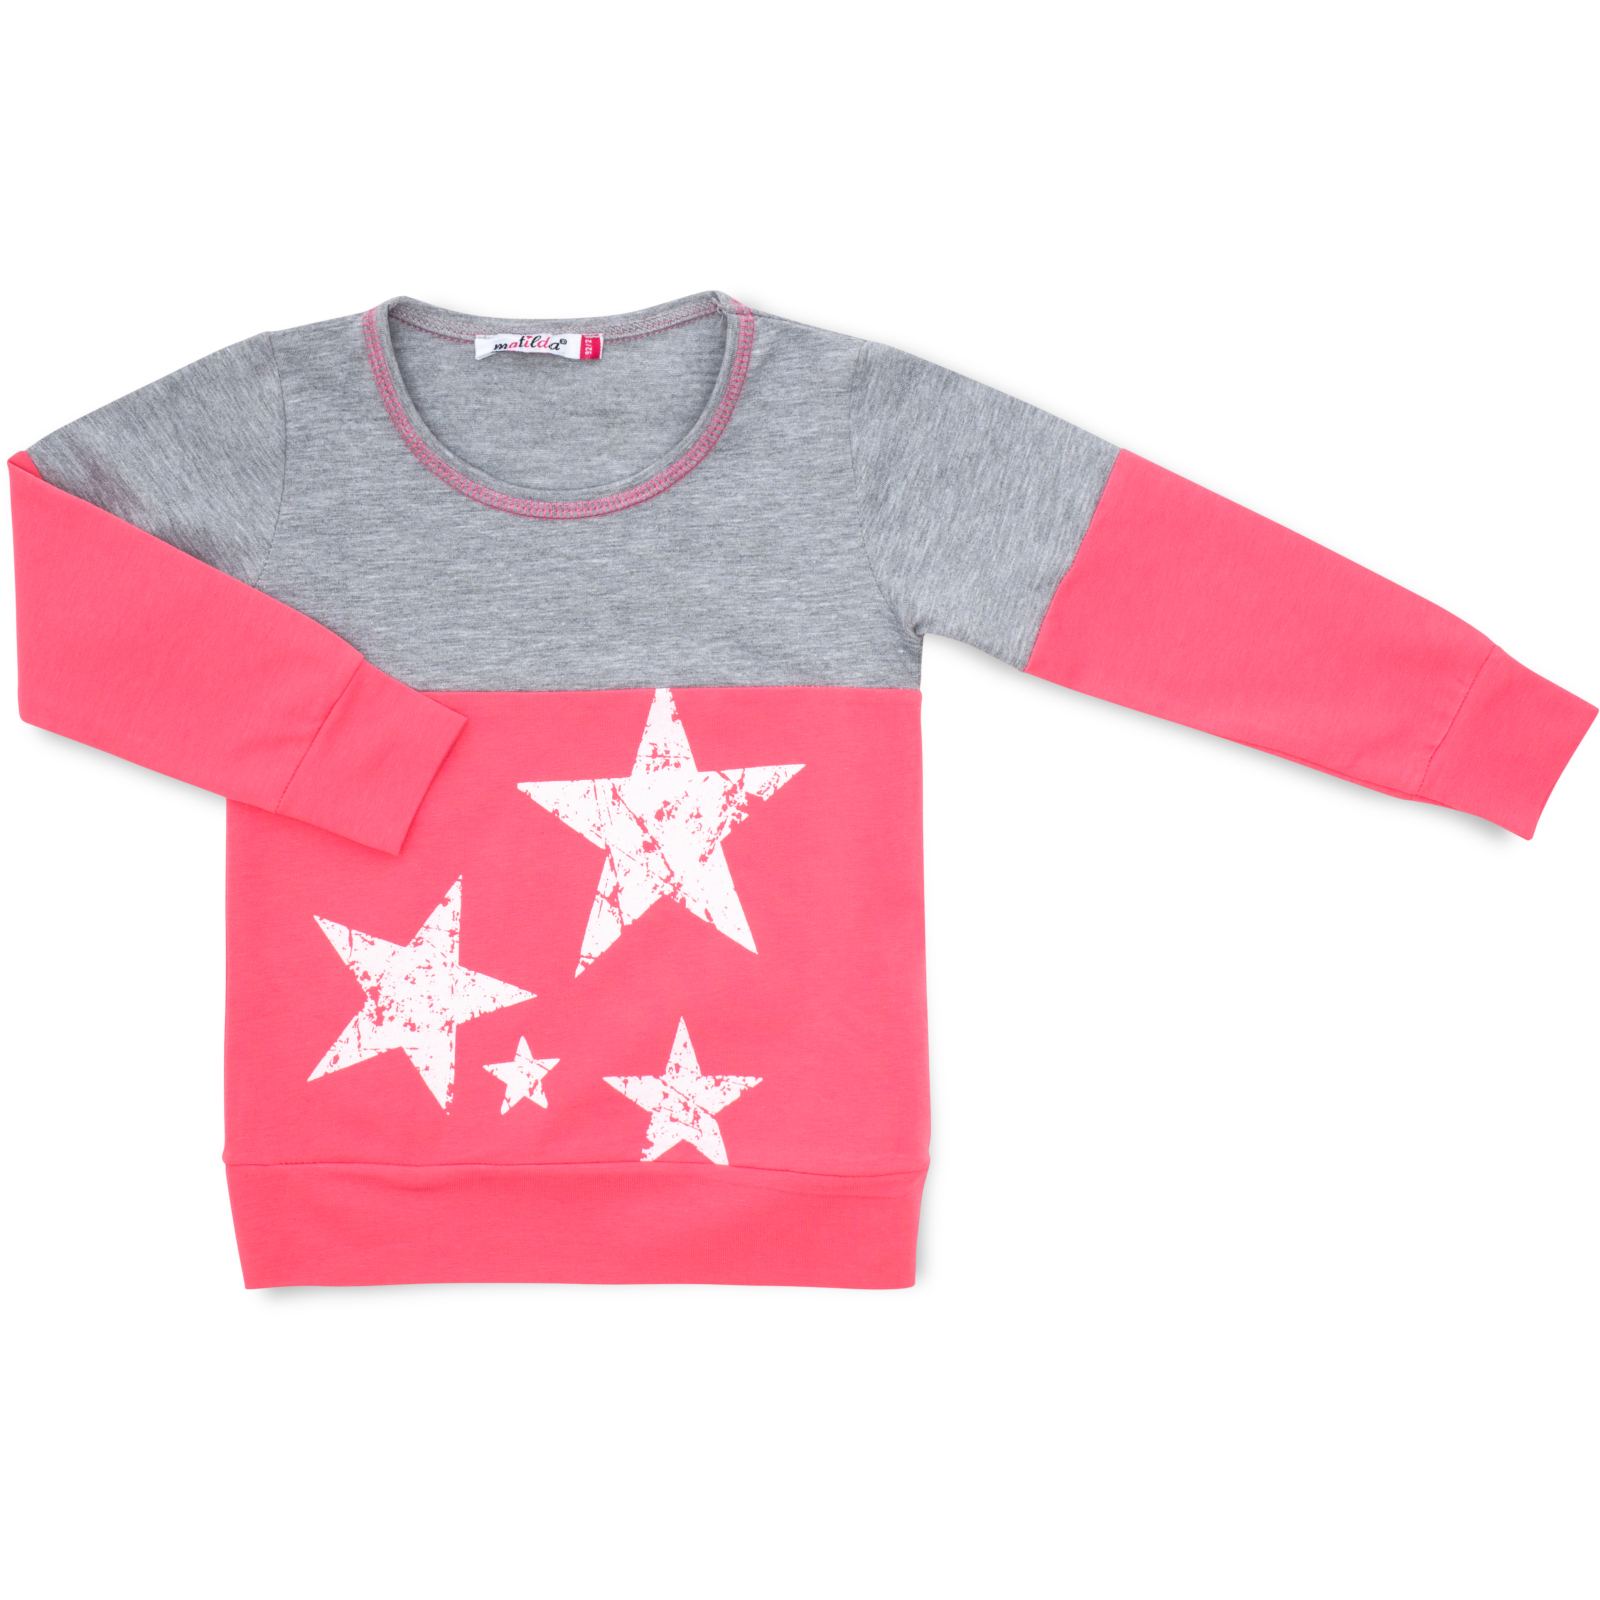 Пижама Matilda со звездочками (7167-92G-pink) изображение 2